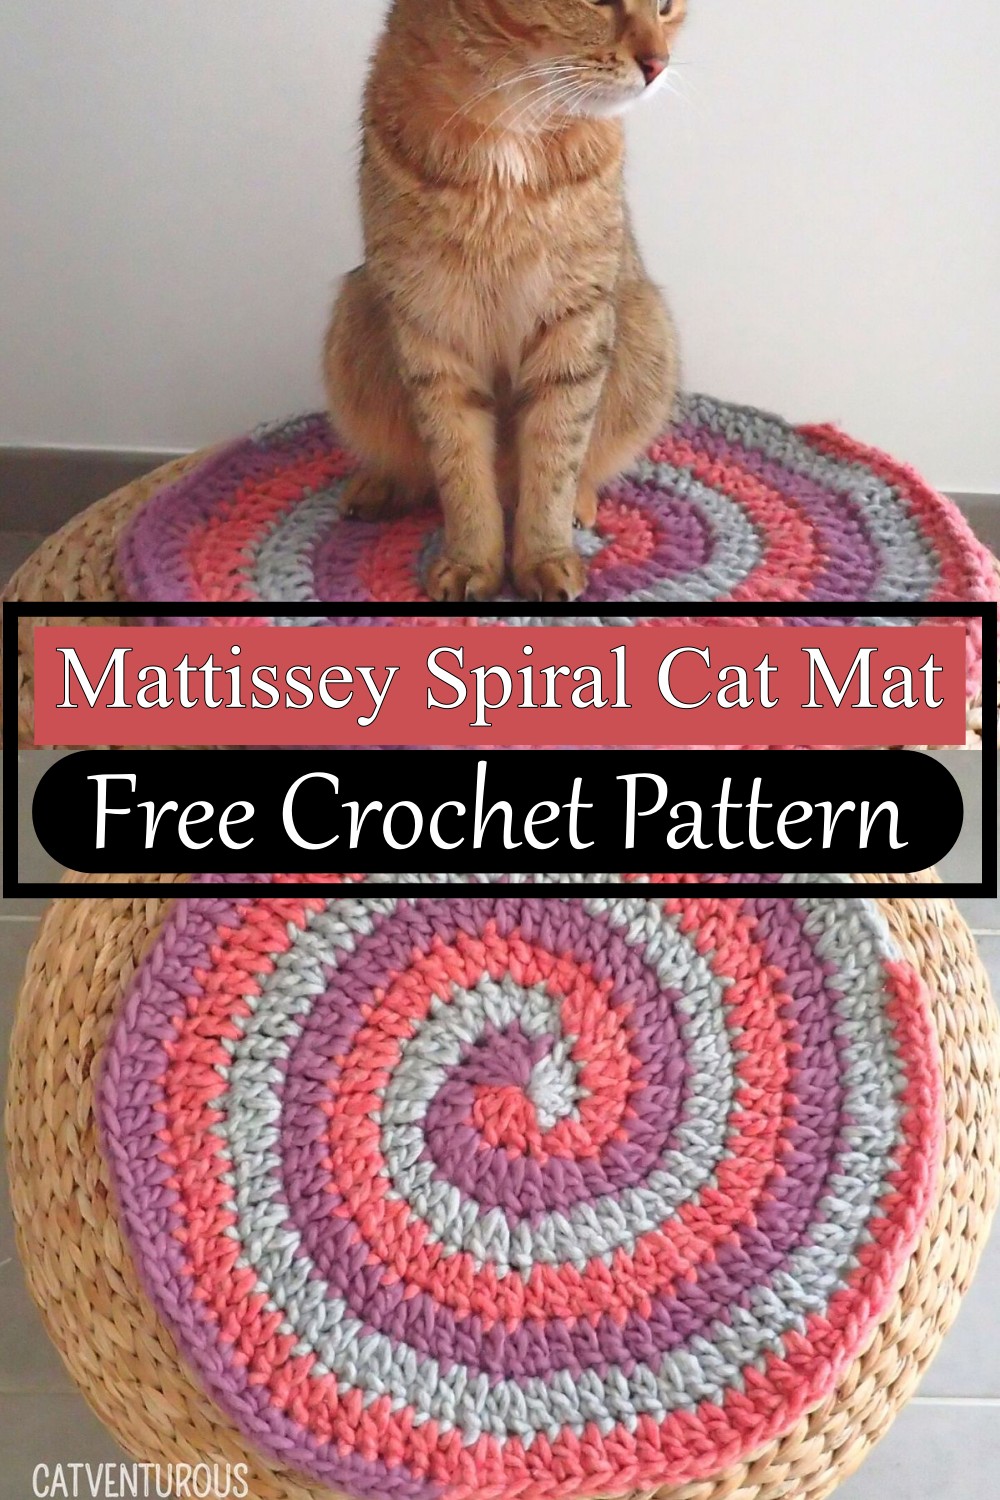 Mattissey Spiral Cat Mat